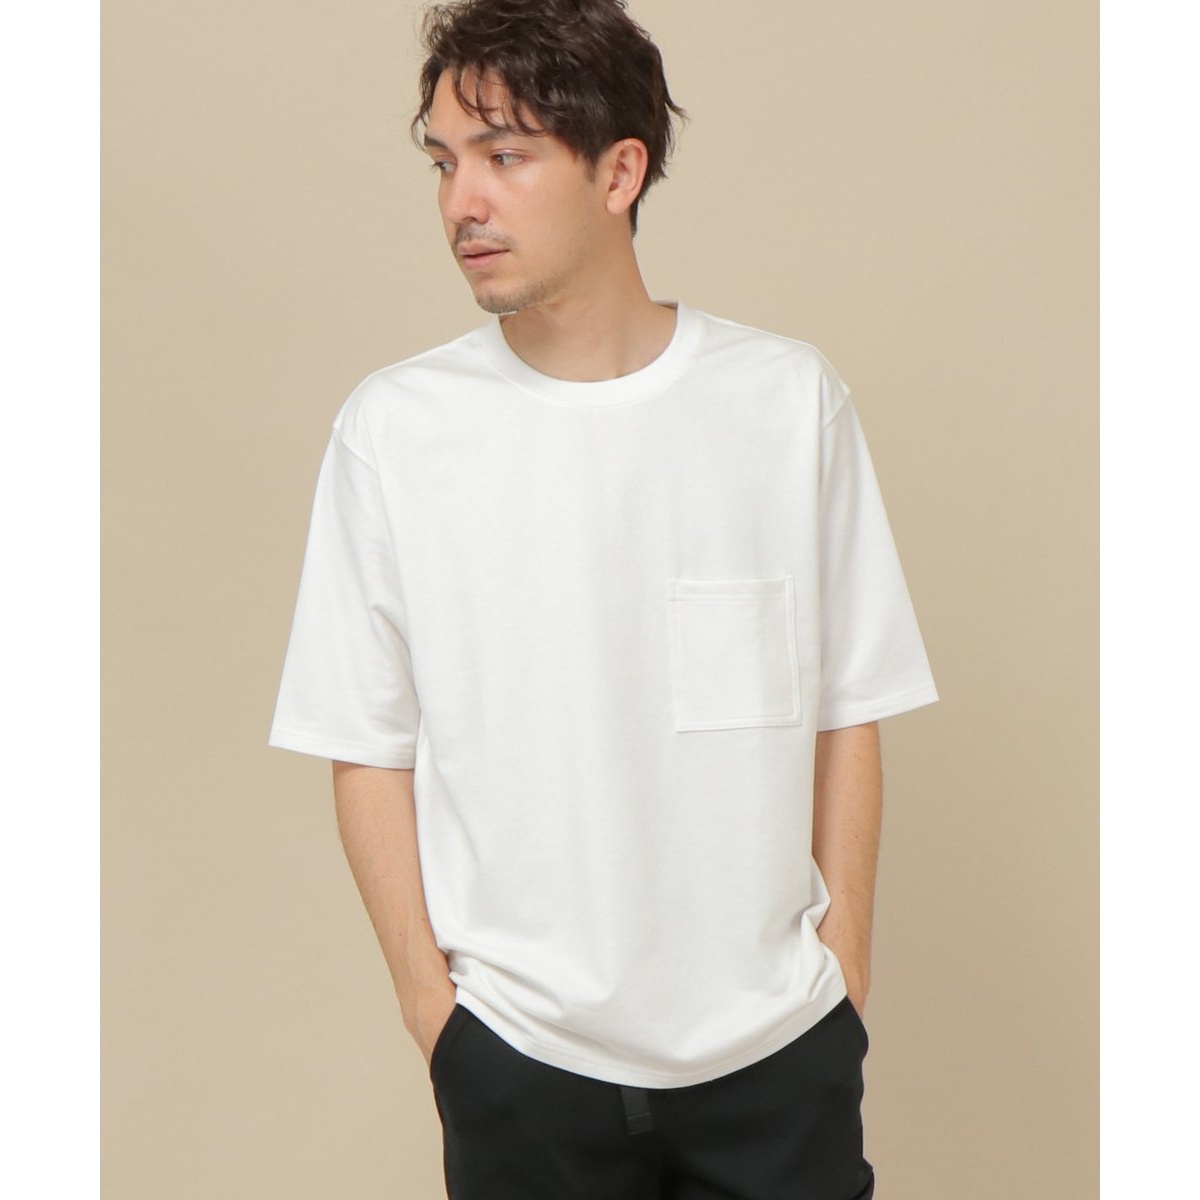 5分袖タフコットンポケット付きTシャツ | イッカ(ikka) | 11321006